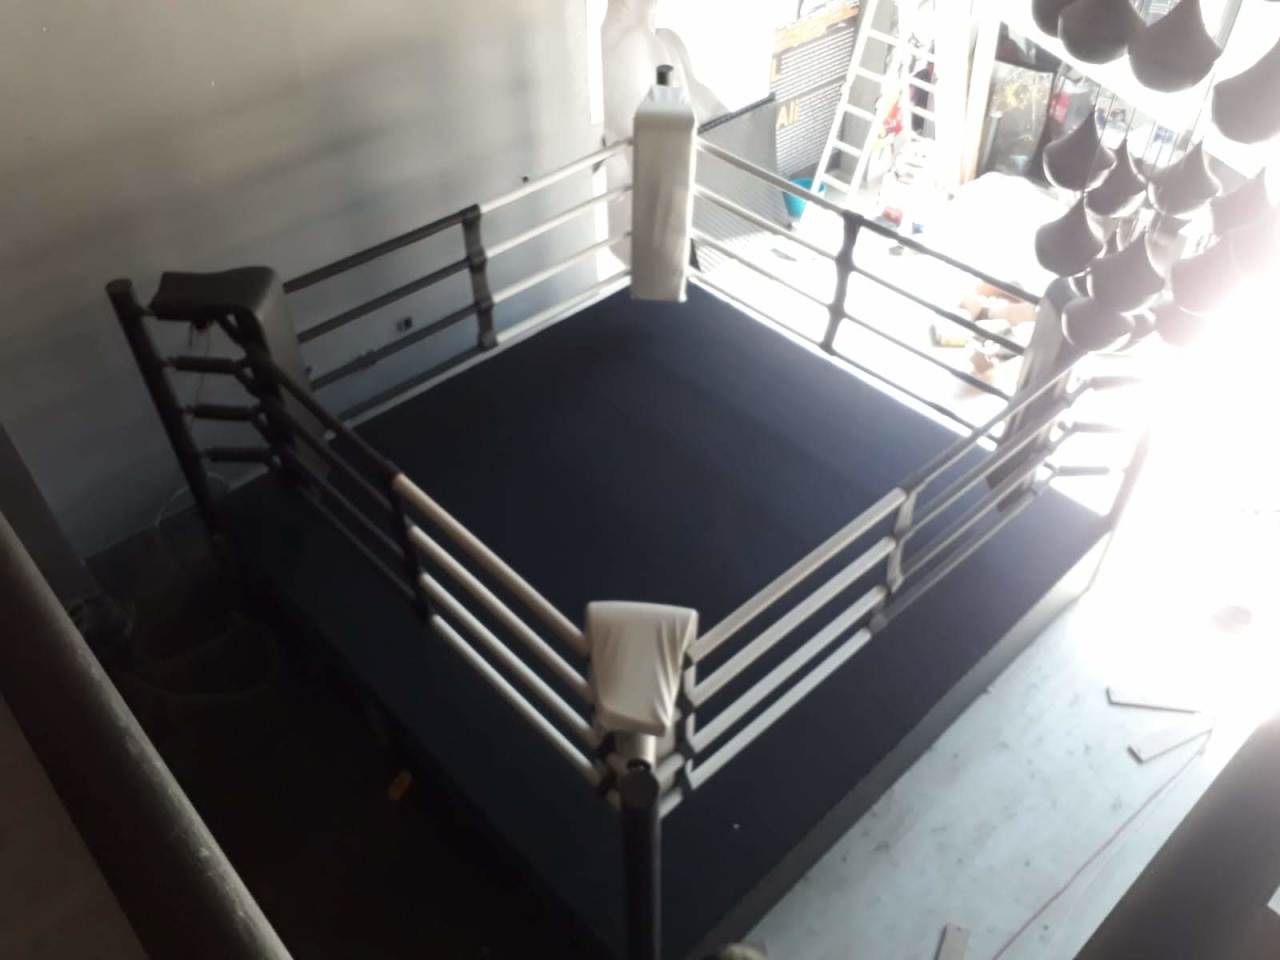 boks ringi yerden 400x400cm yerden 50 cm yükseklikte standart baskısız